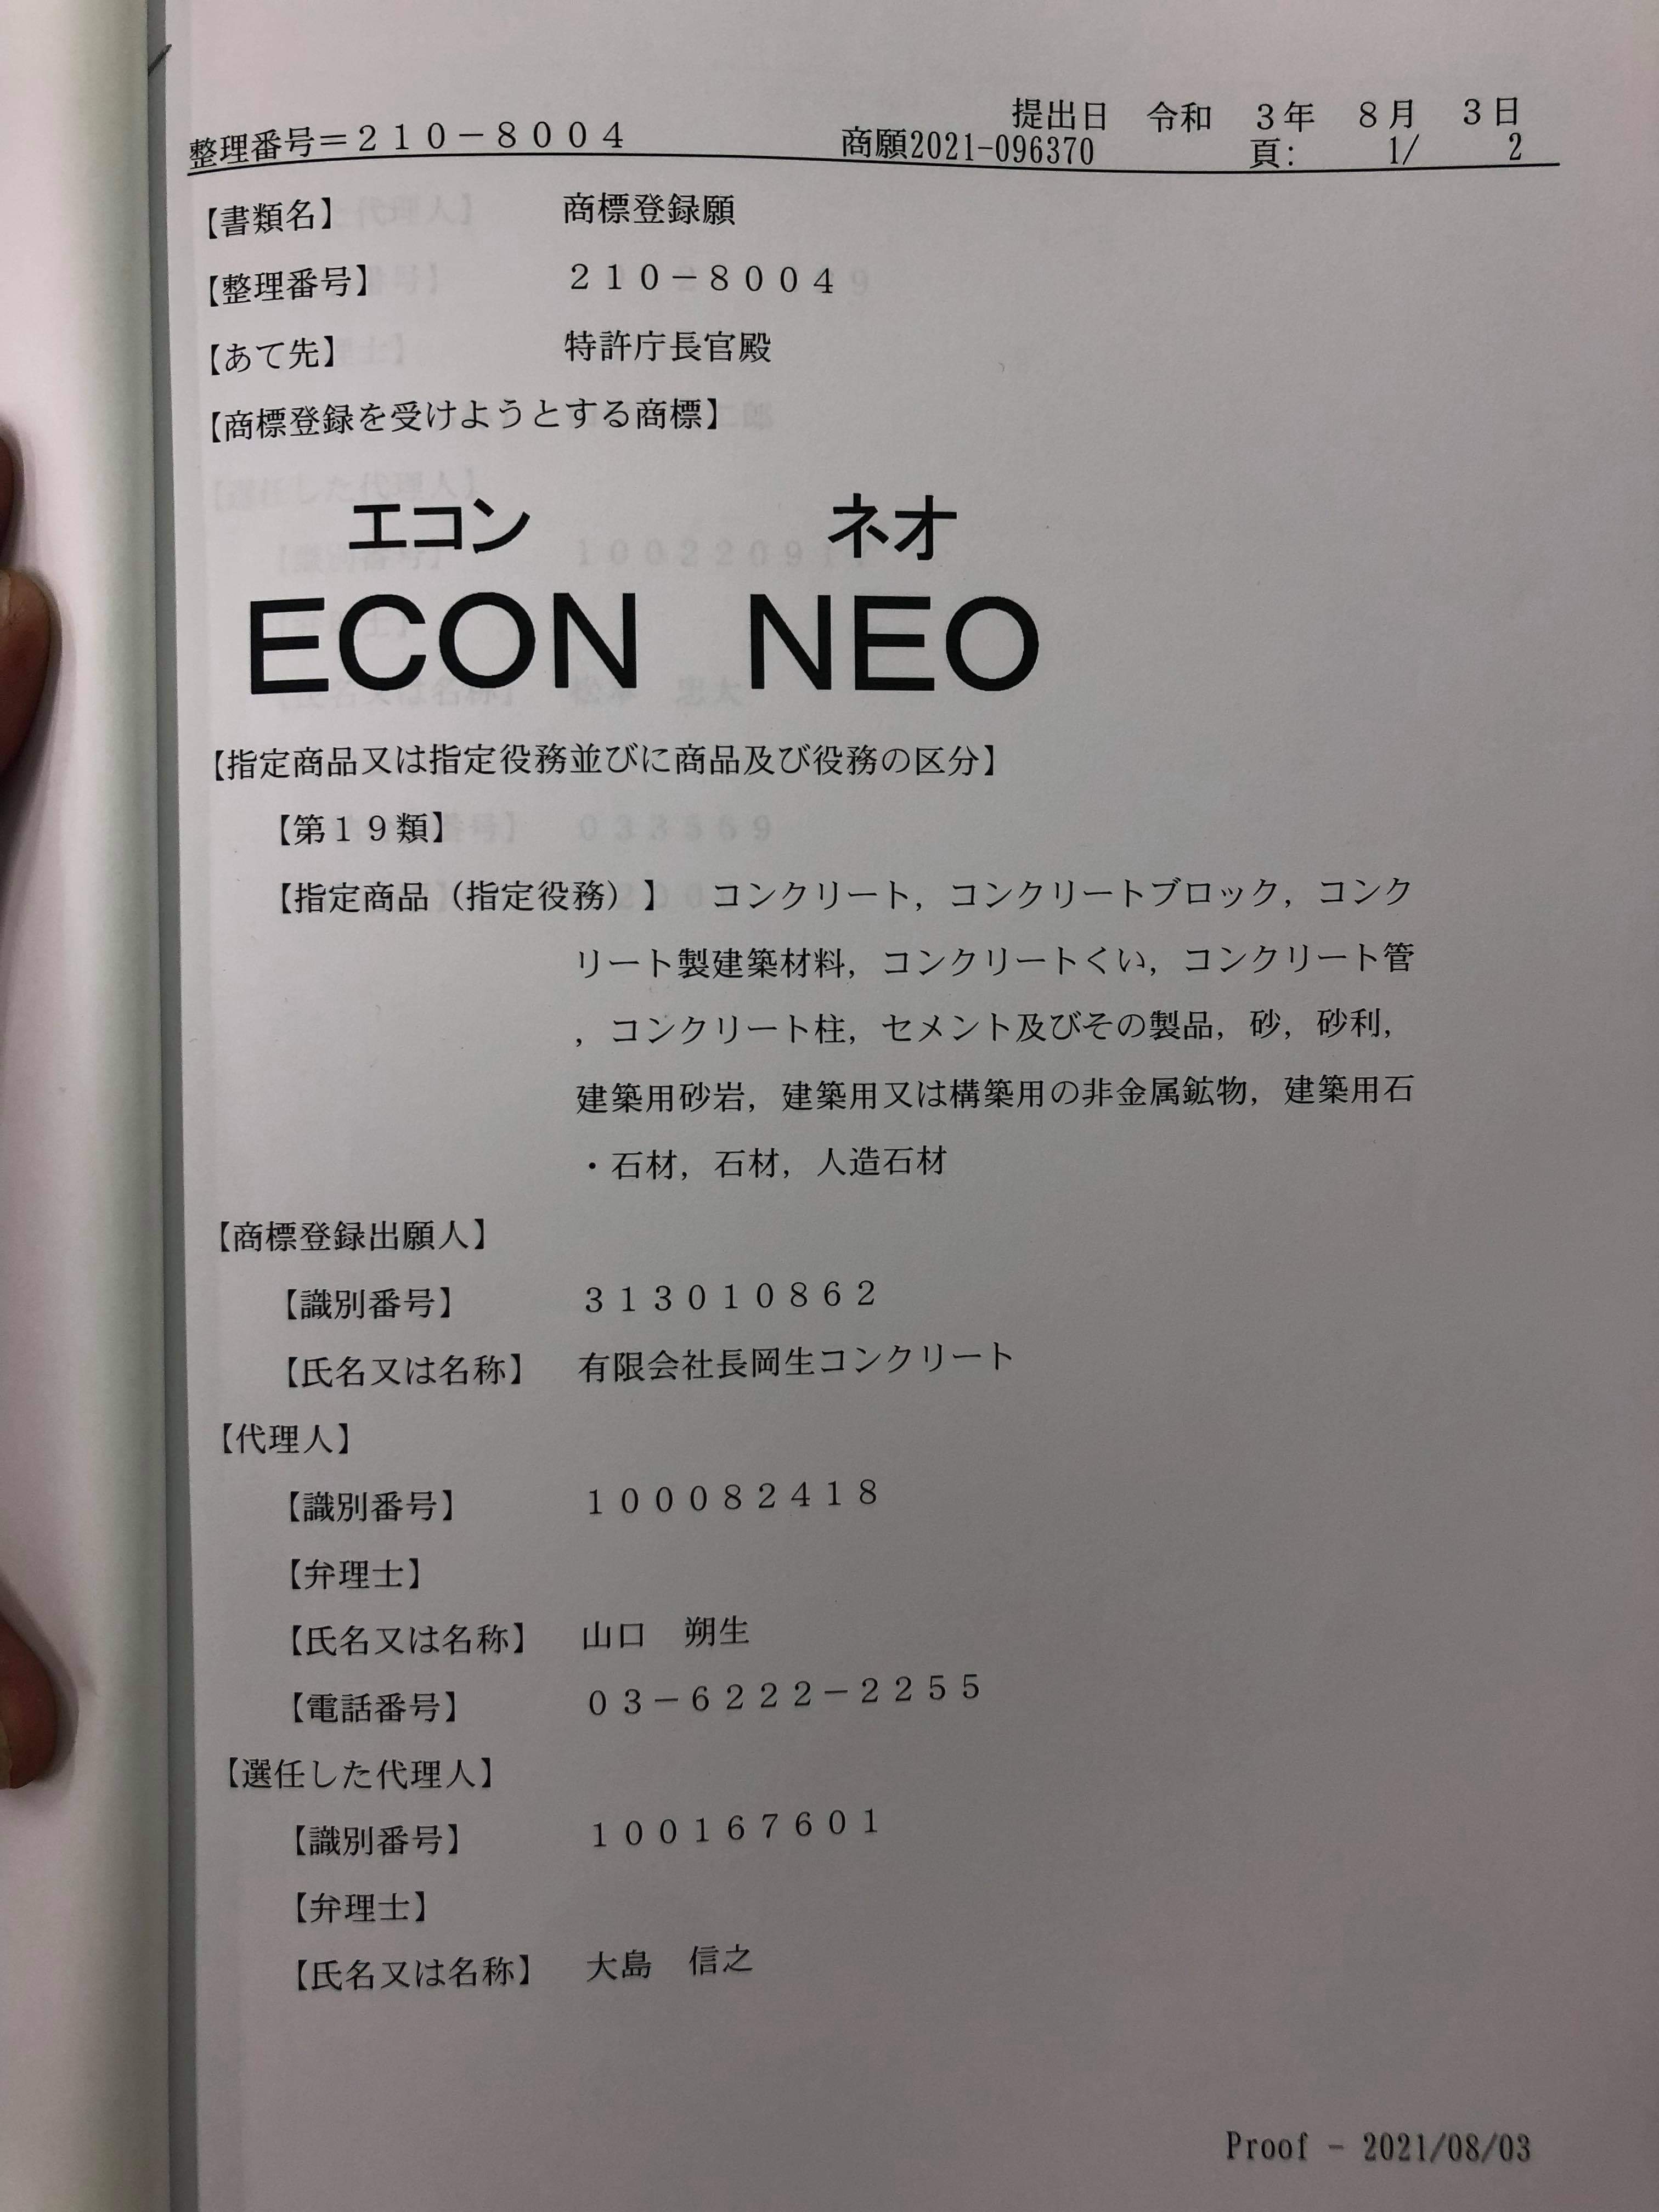 【静岡】「残コンリサイクルコンクリートECON NEO商標登録出願しました」石原工務店・U字溝捨てコン